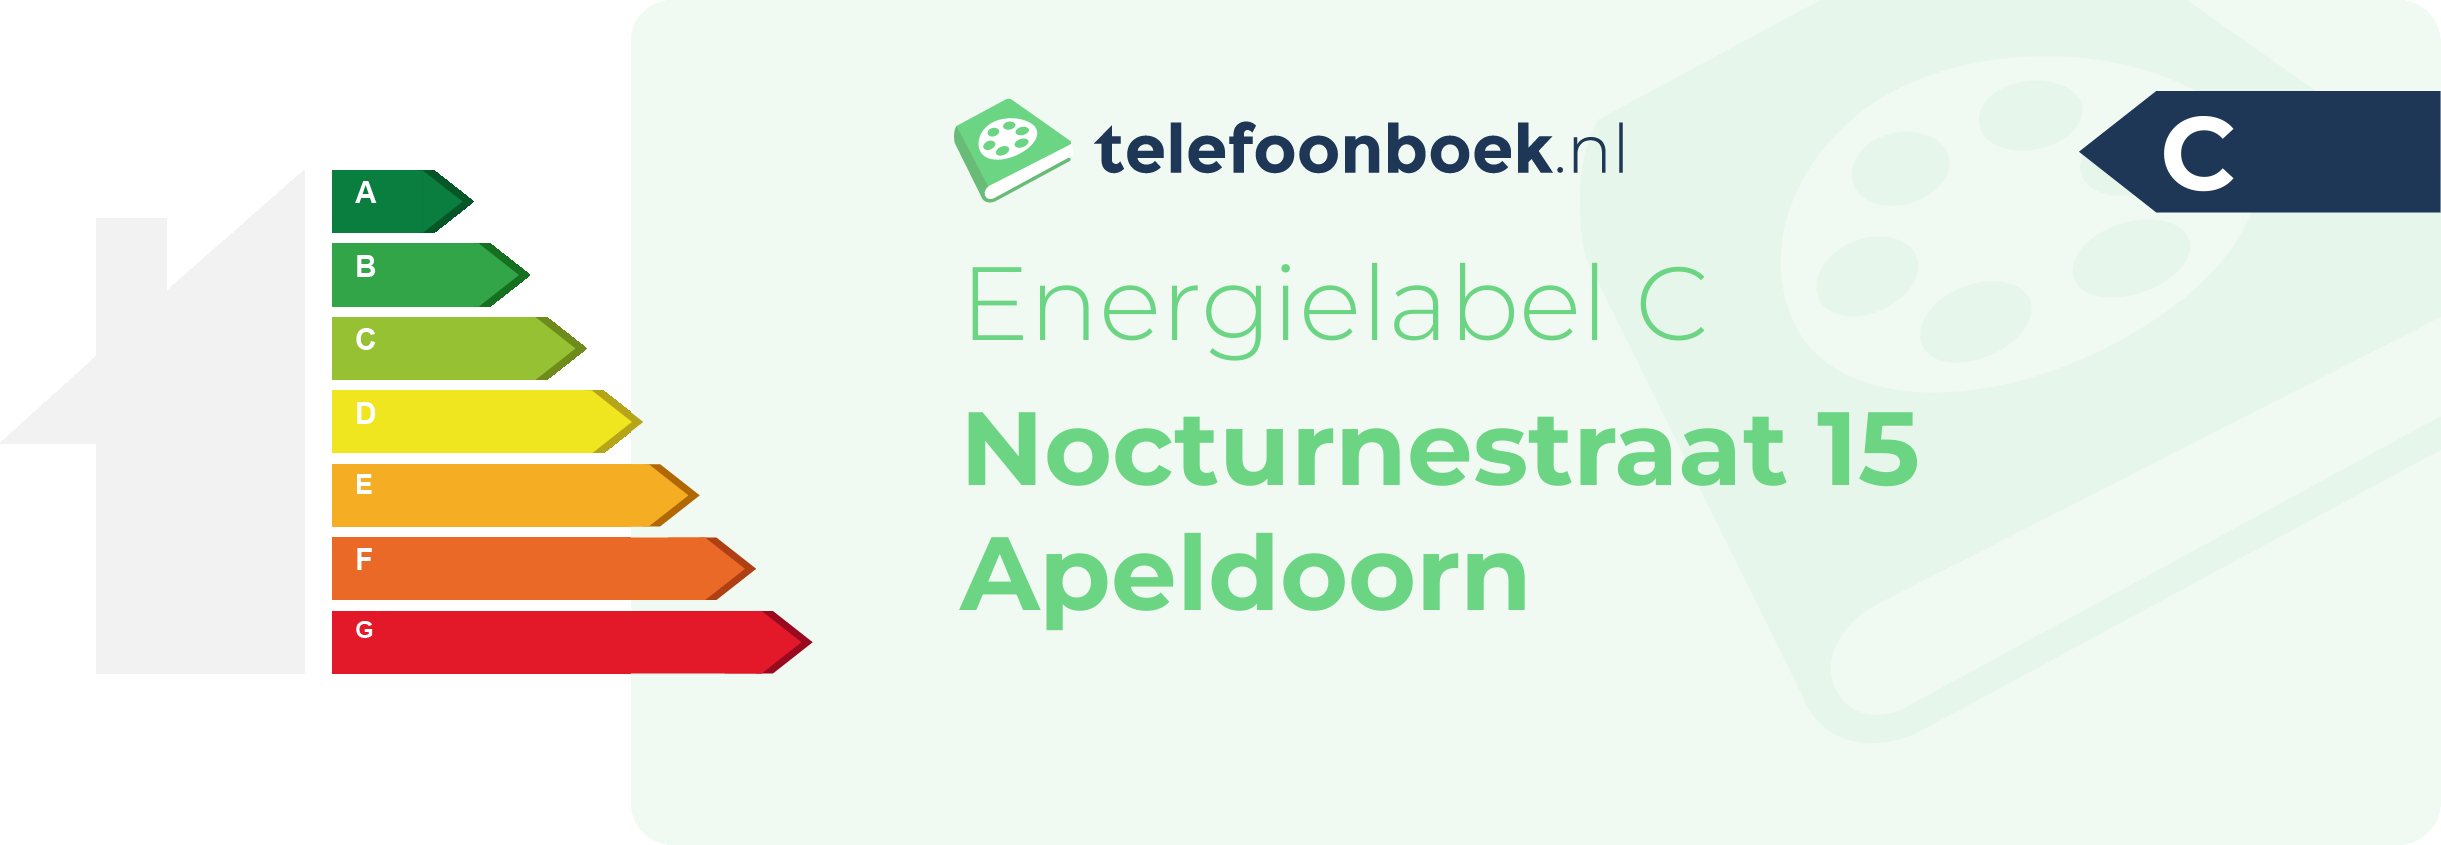 Energielabel Nocturnestraat 15 Apeldoorn